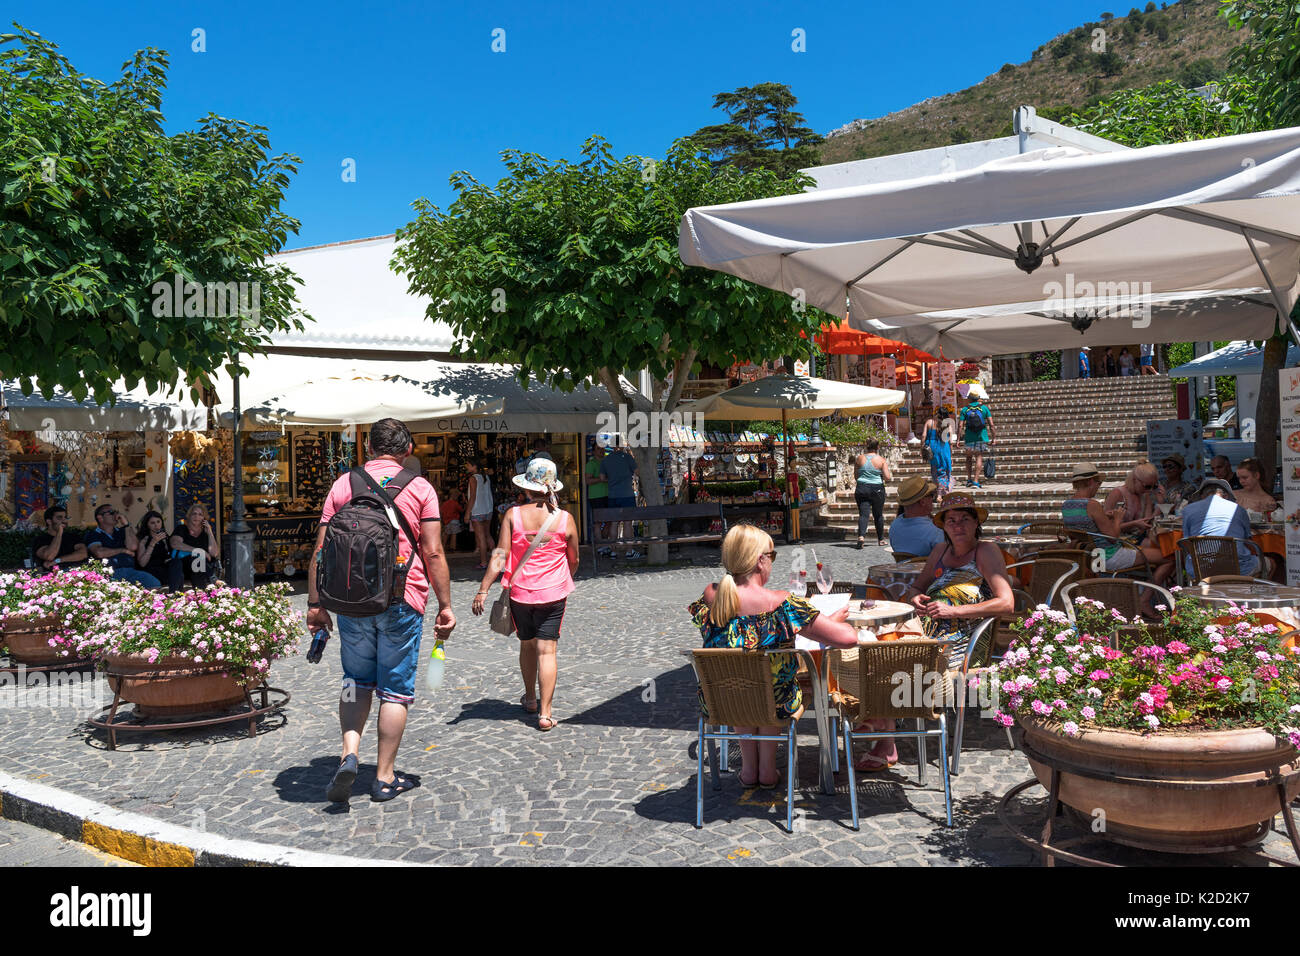 Piazza Vittorio à Anacapri sur l'île de Capri, Italie. Banque D'Images